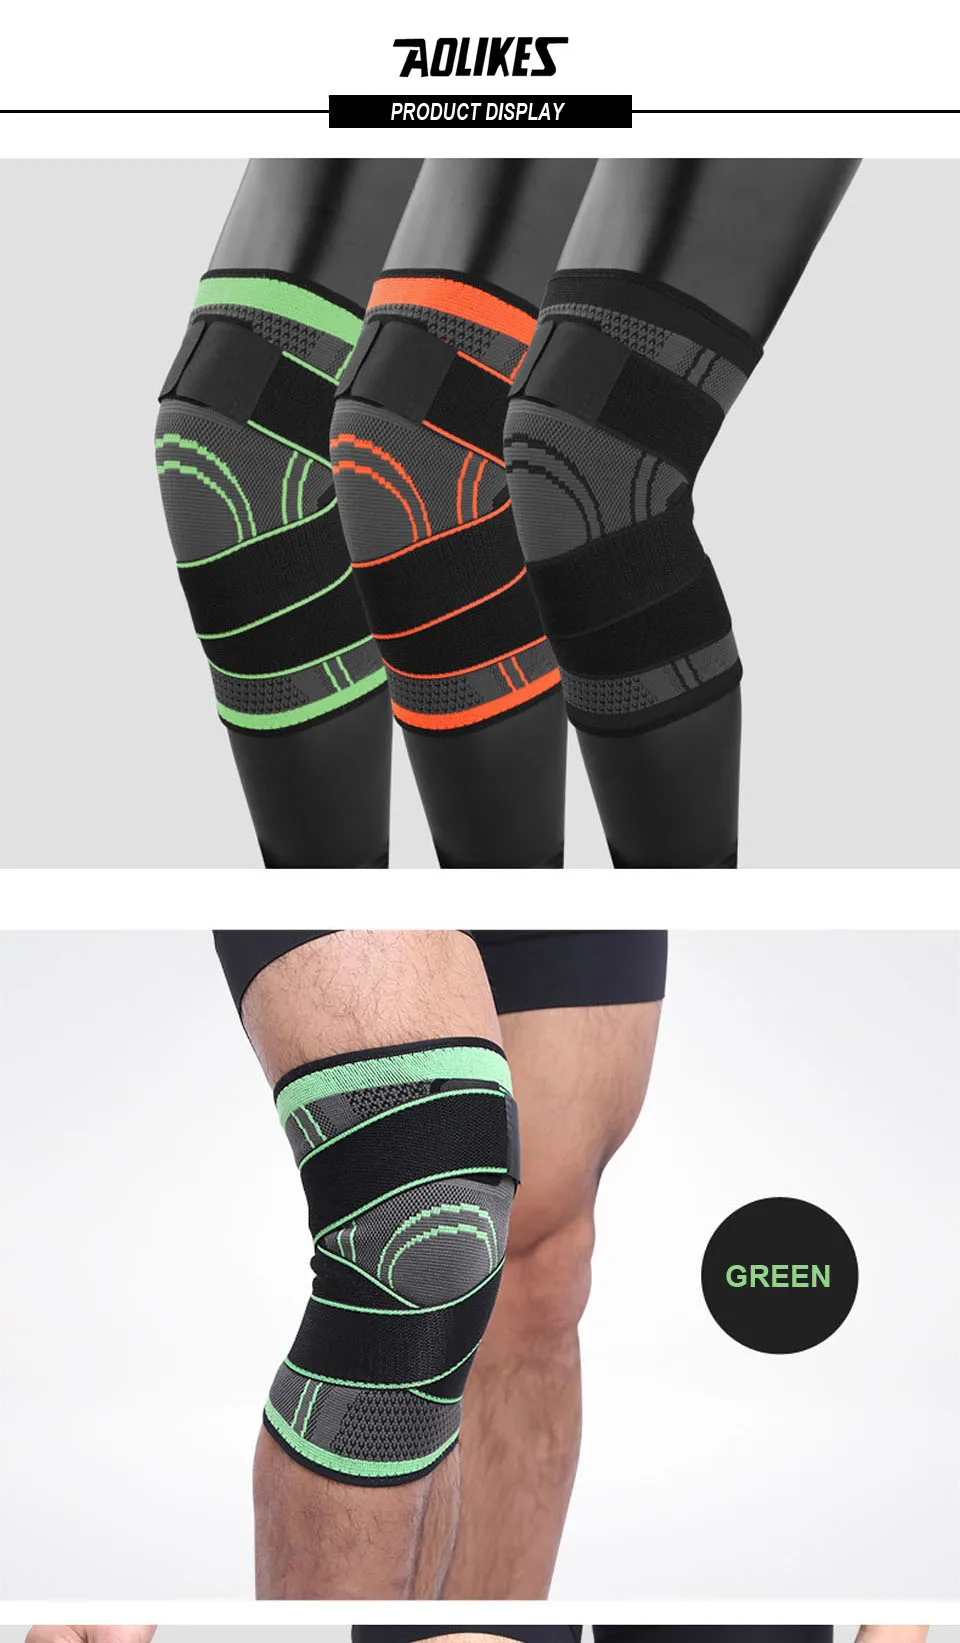 AOLIKES 1 шт. поддержка колена профессиональные защитные спортивные наколенники дышащая повязка наколенники для баскетбола, тенниса, велоспорта